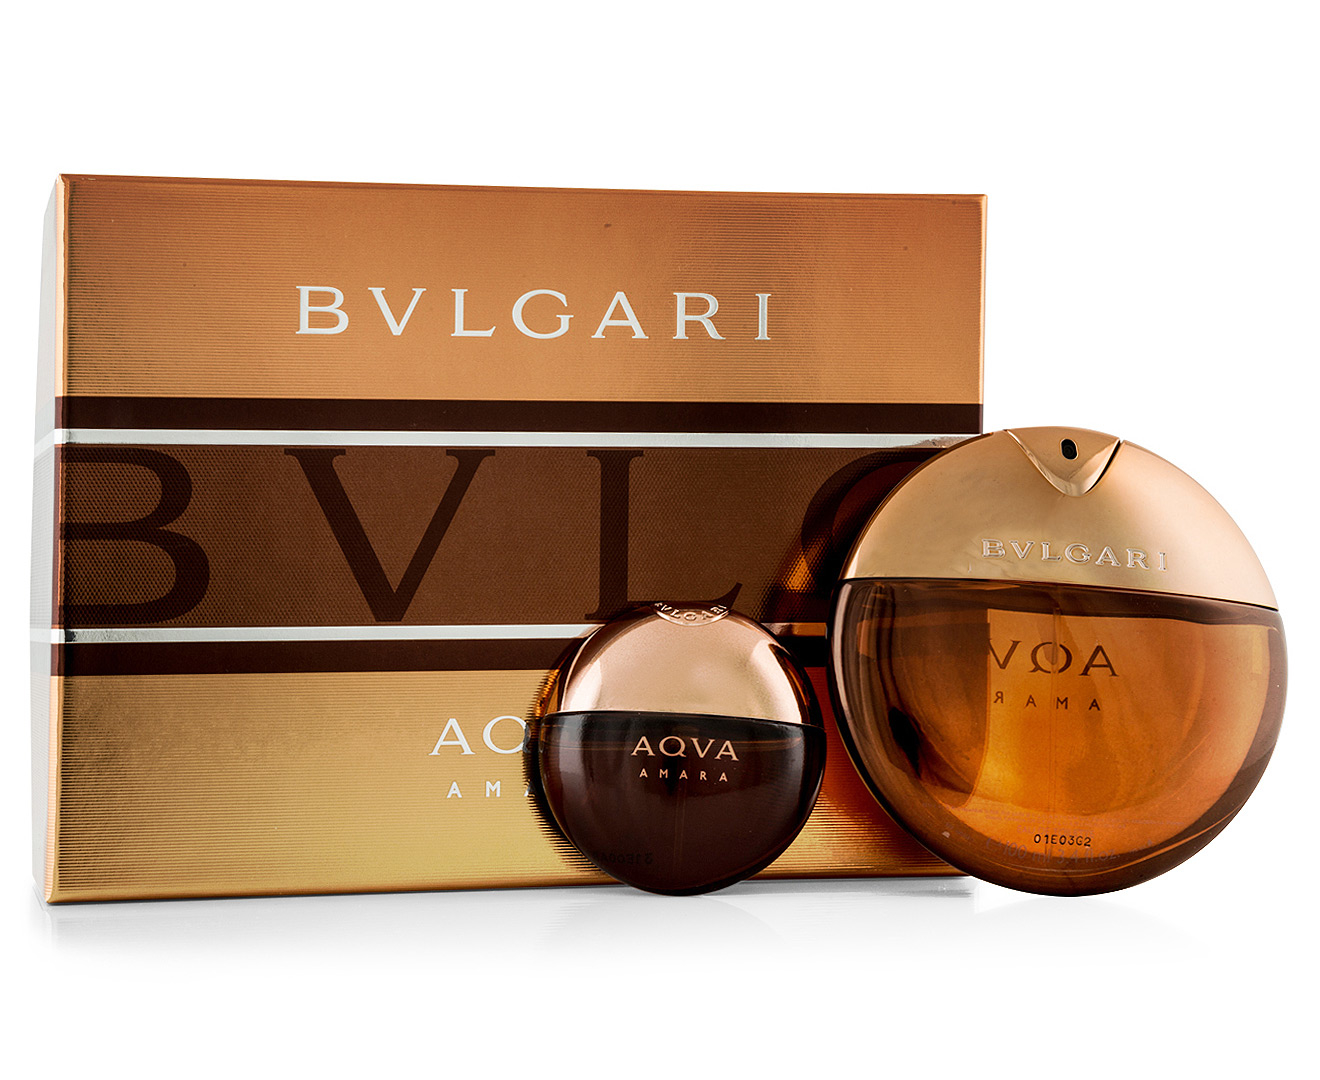 discontinued bvlgari perfumes